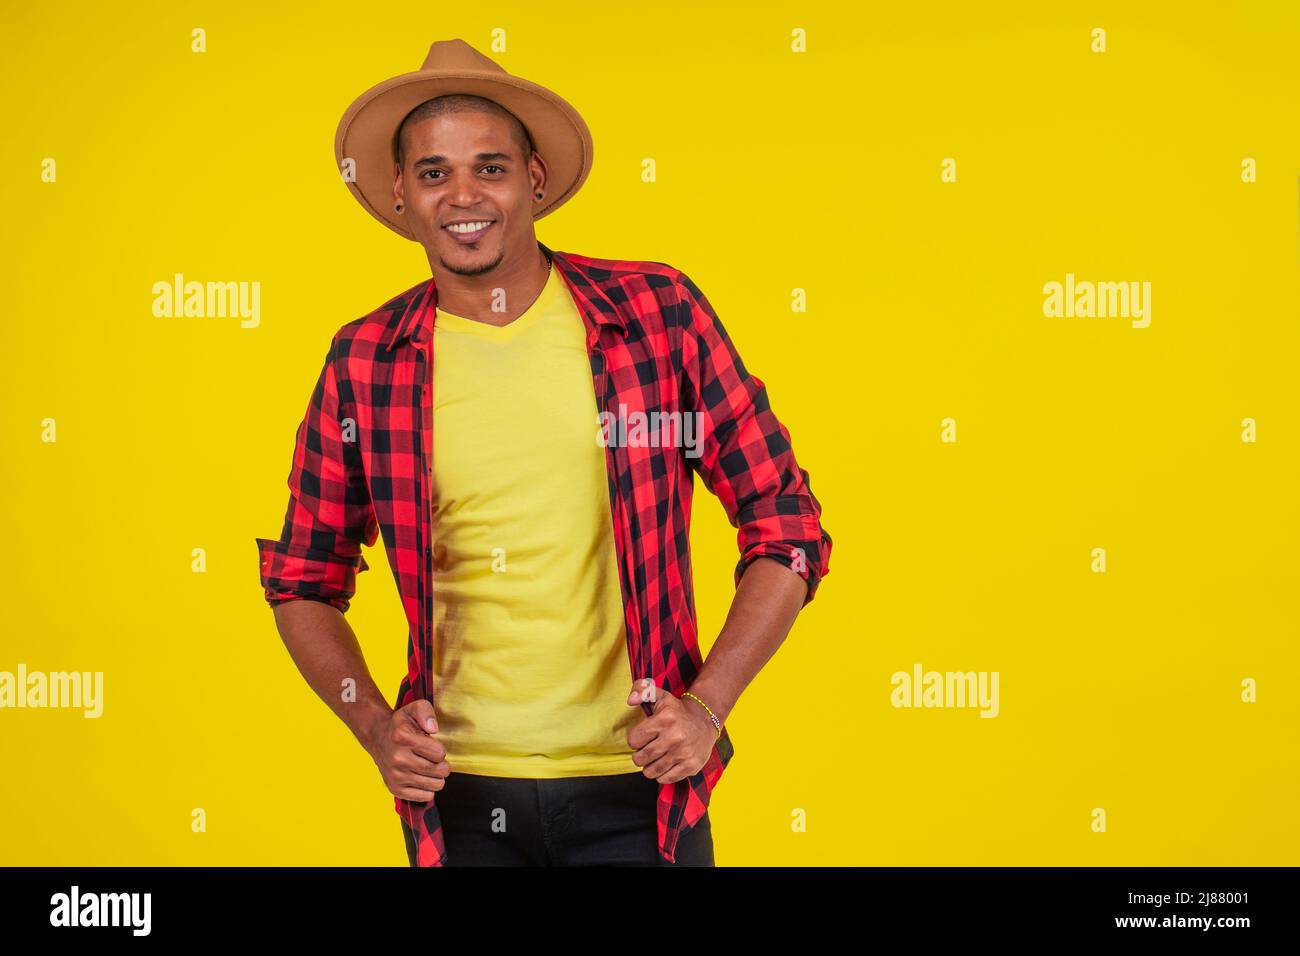 arabischer brasilianischer Mann posiert im Studio auf gelbem Hintergrund Stockfoto